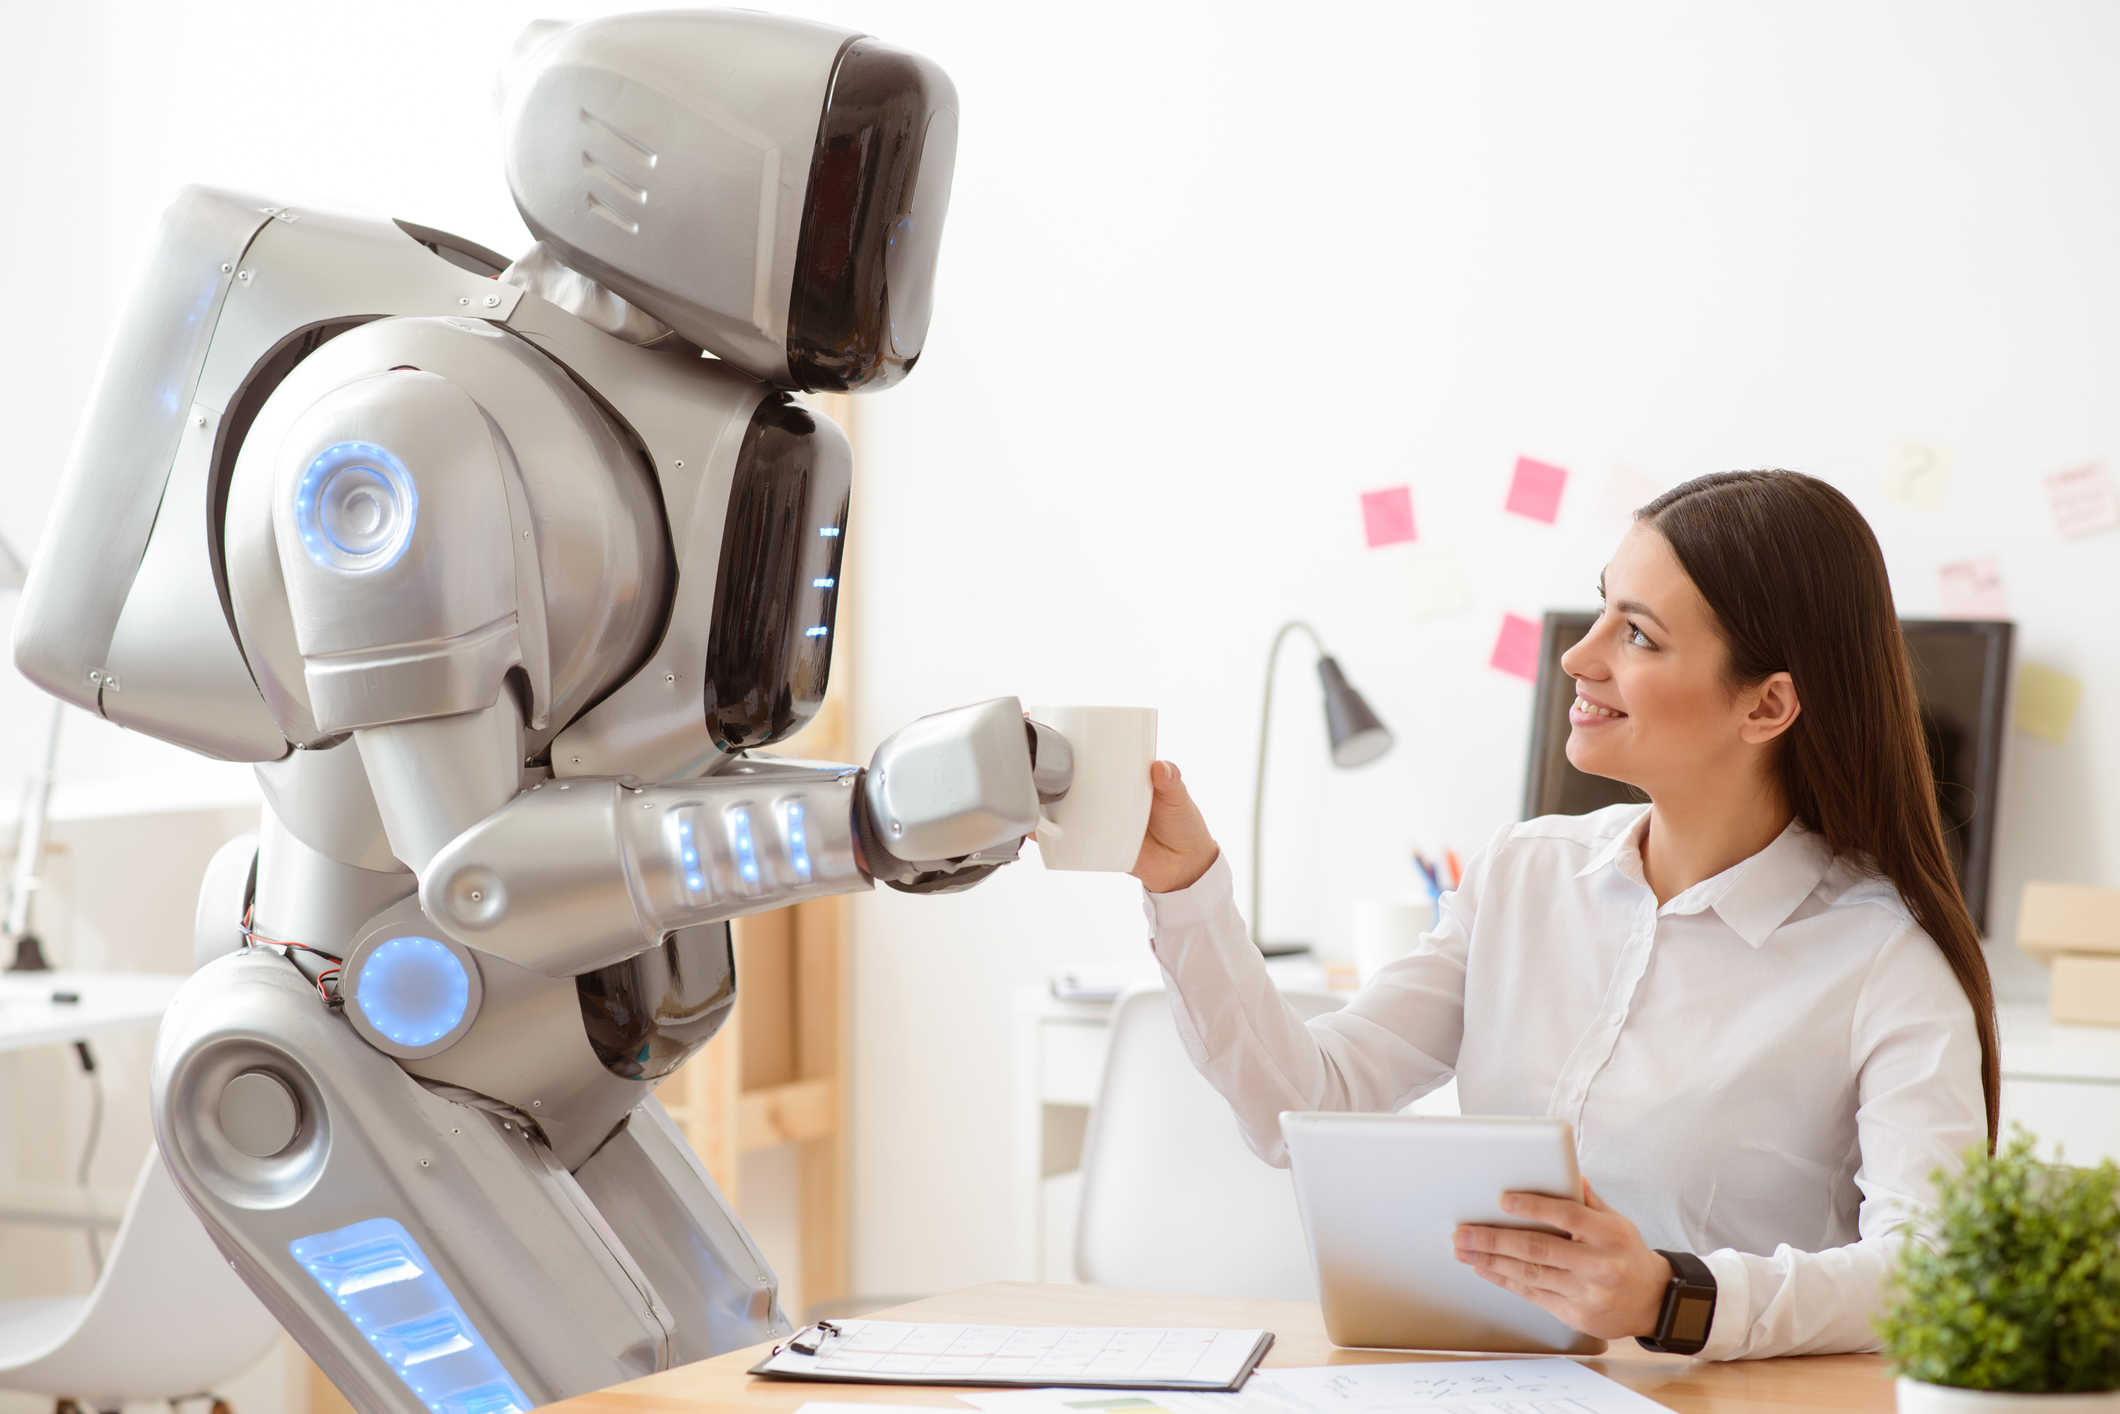 Работы и технологии робот. Робот человек. Роботы в будущем. Робот с искусственным интеллектом. Роботы заменят людей.